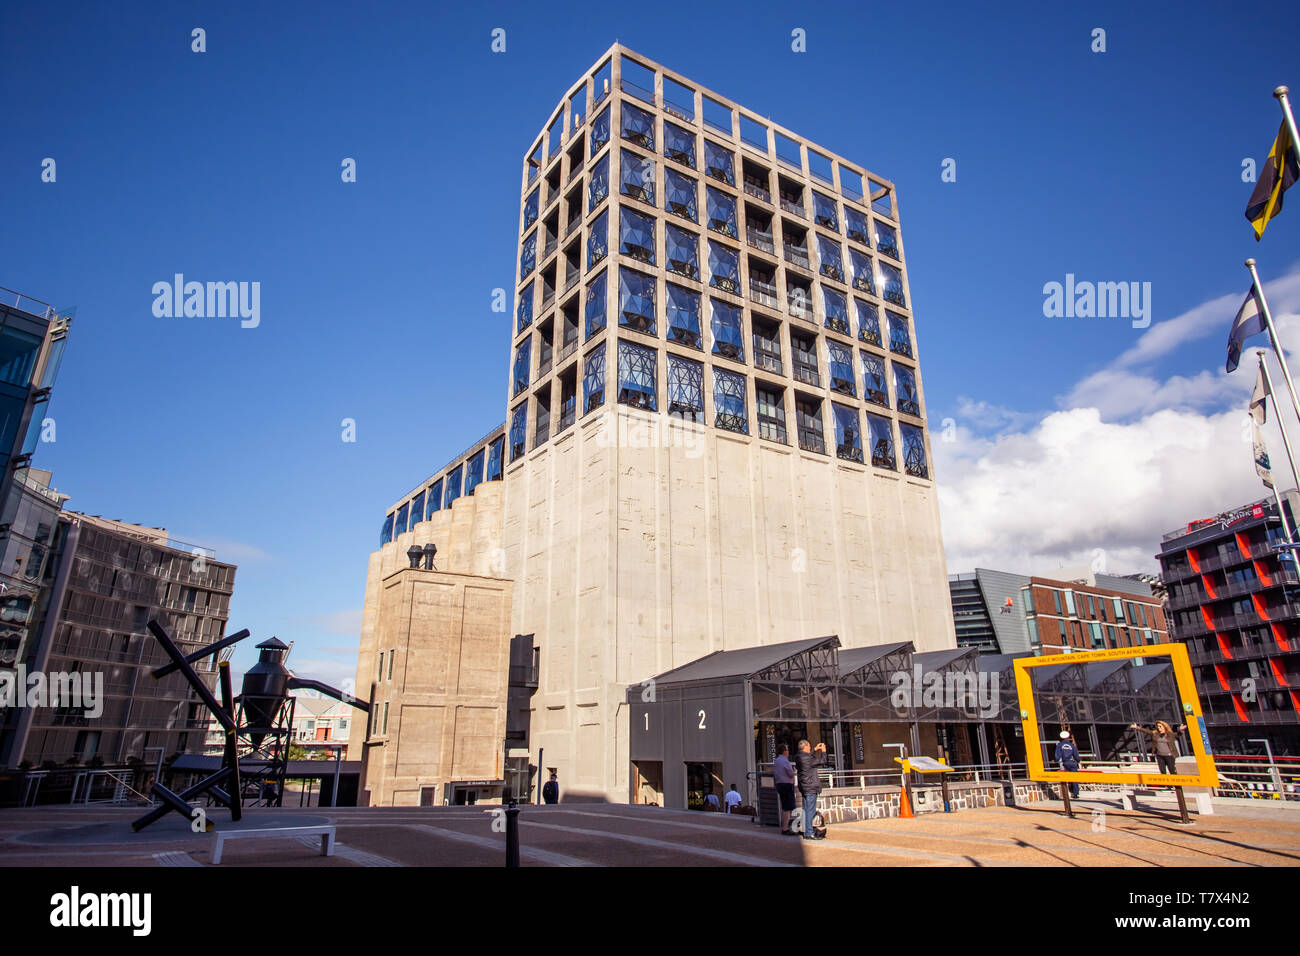 Kapstadt, Südafrika, 12. April 2019: Außen der zeitgenössischen Kunst. Das Gebäude wurde aus alten Getreidesilos umgebaut. Stockfoto